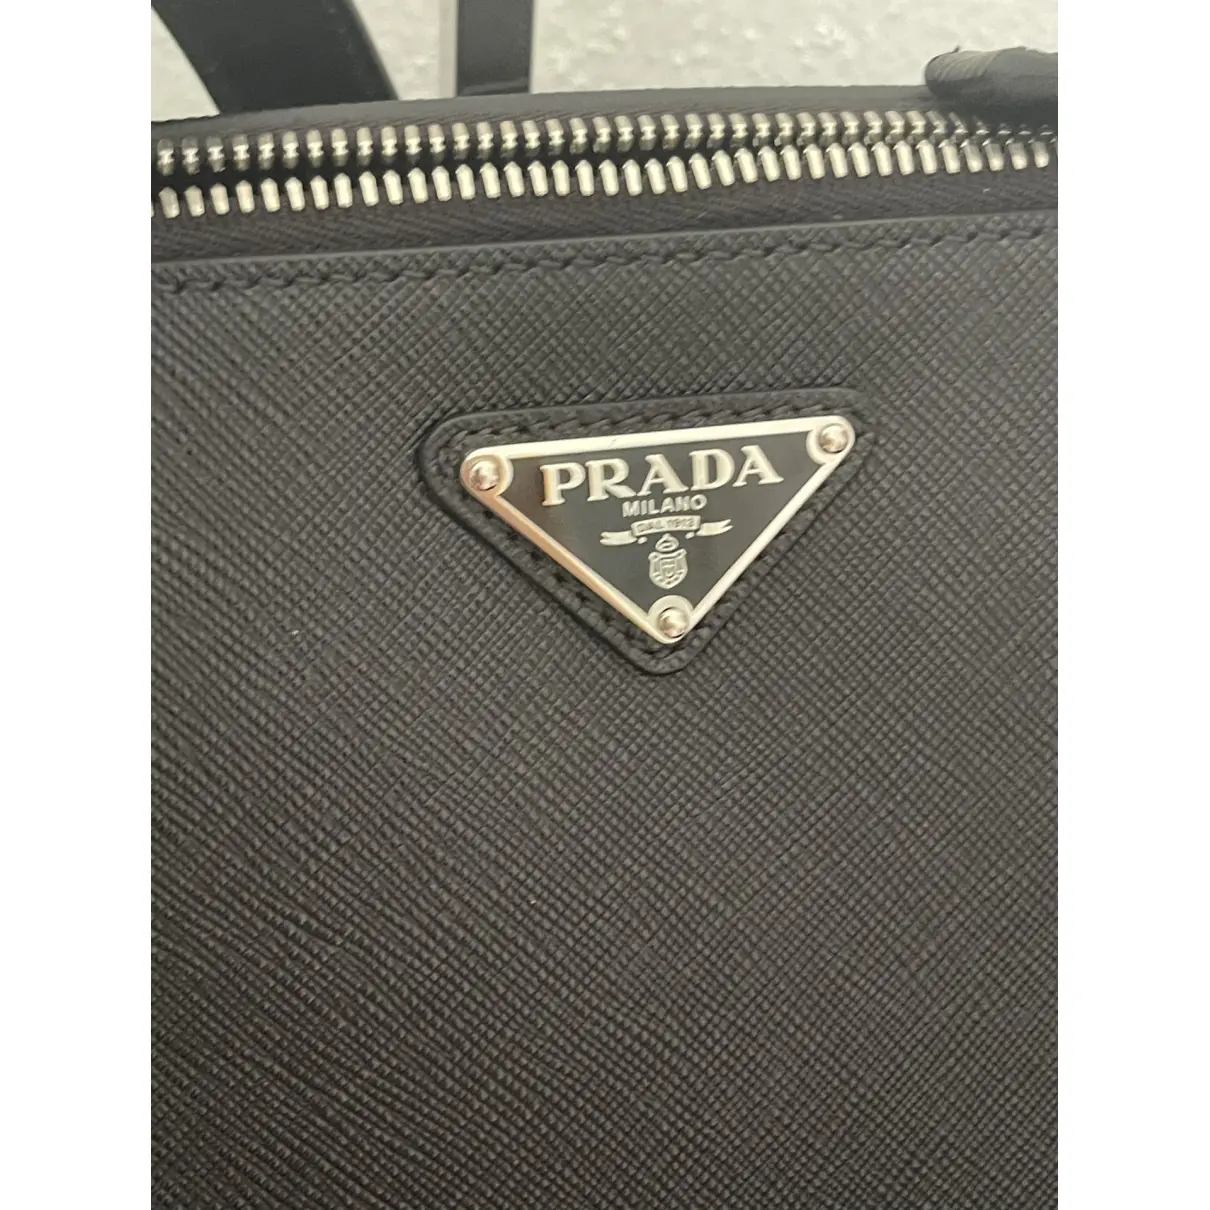 Odette leather backpack Prada